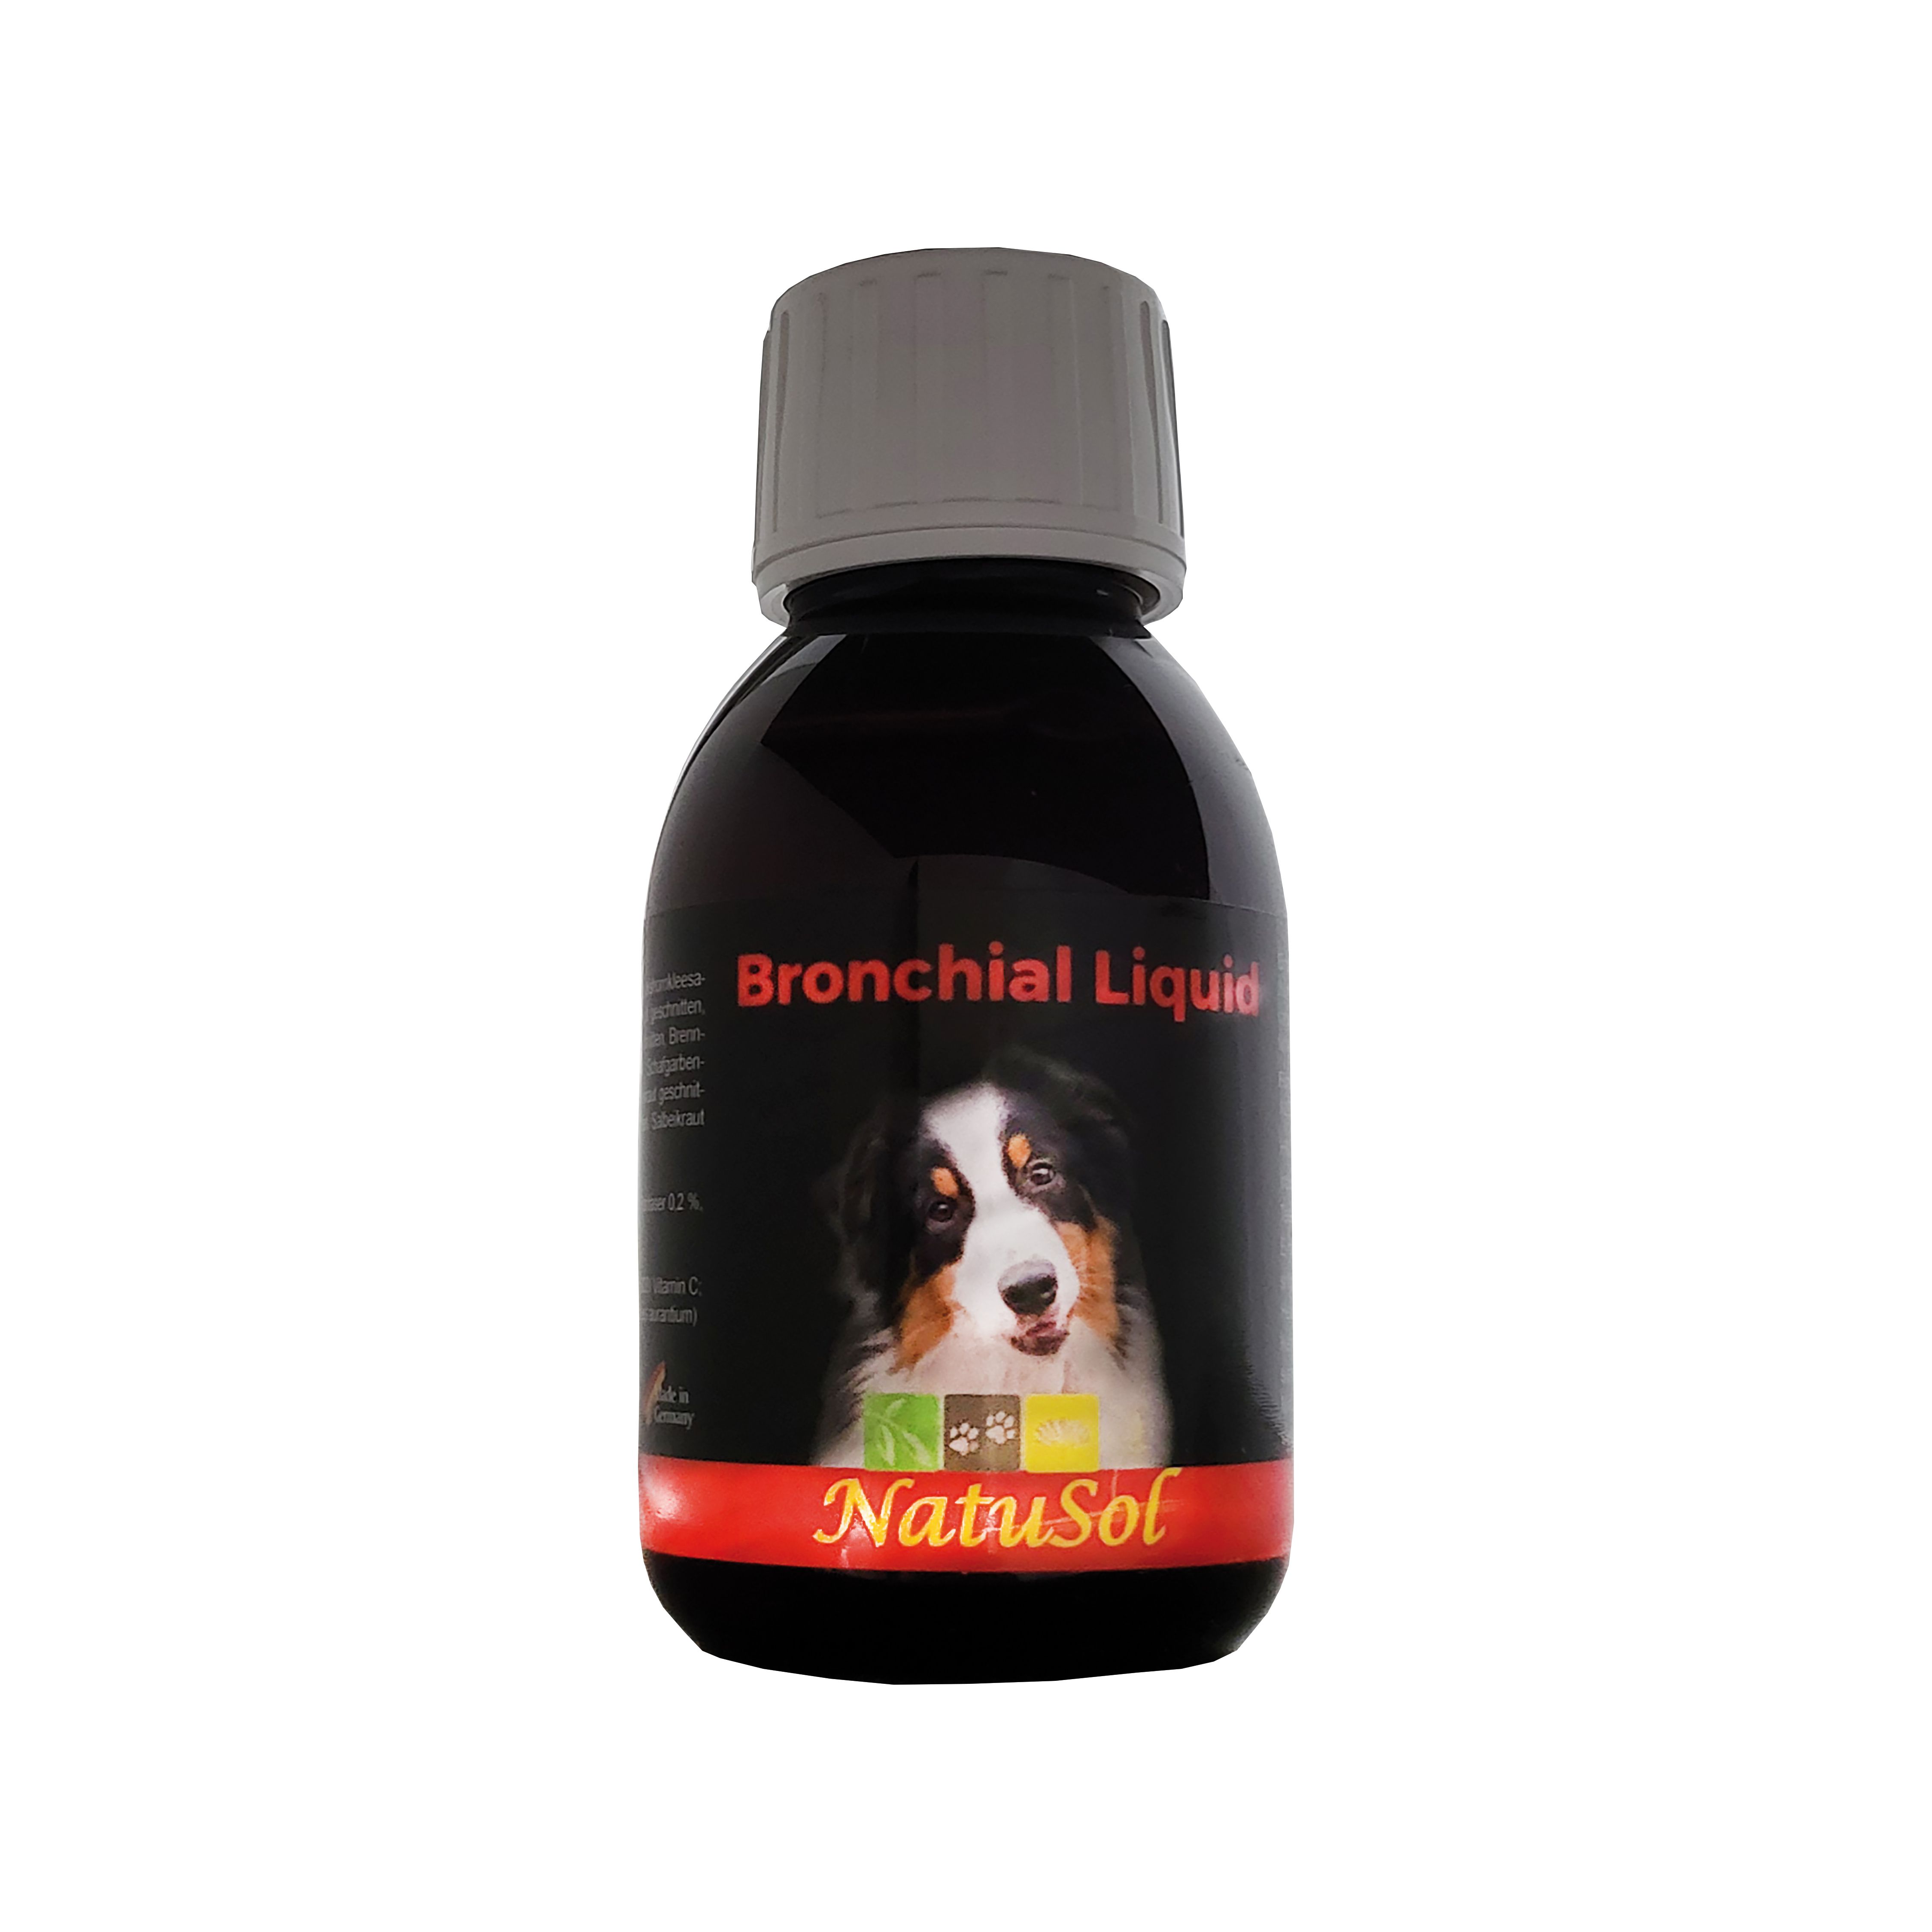 NatuSol Bronchial Liquid für Hunde - Wertvolle Zusammensetzung zur Unterstützung der Atemwege